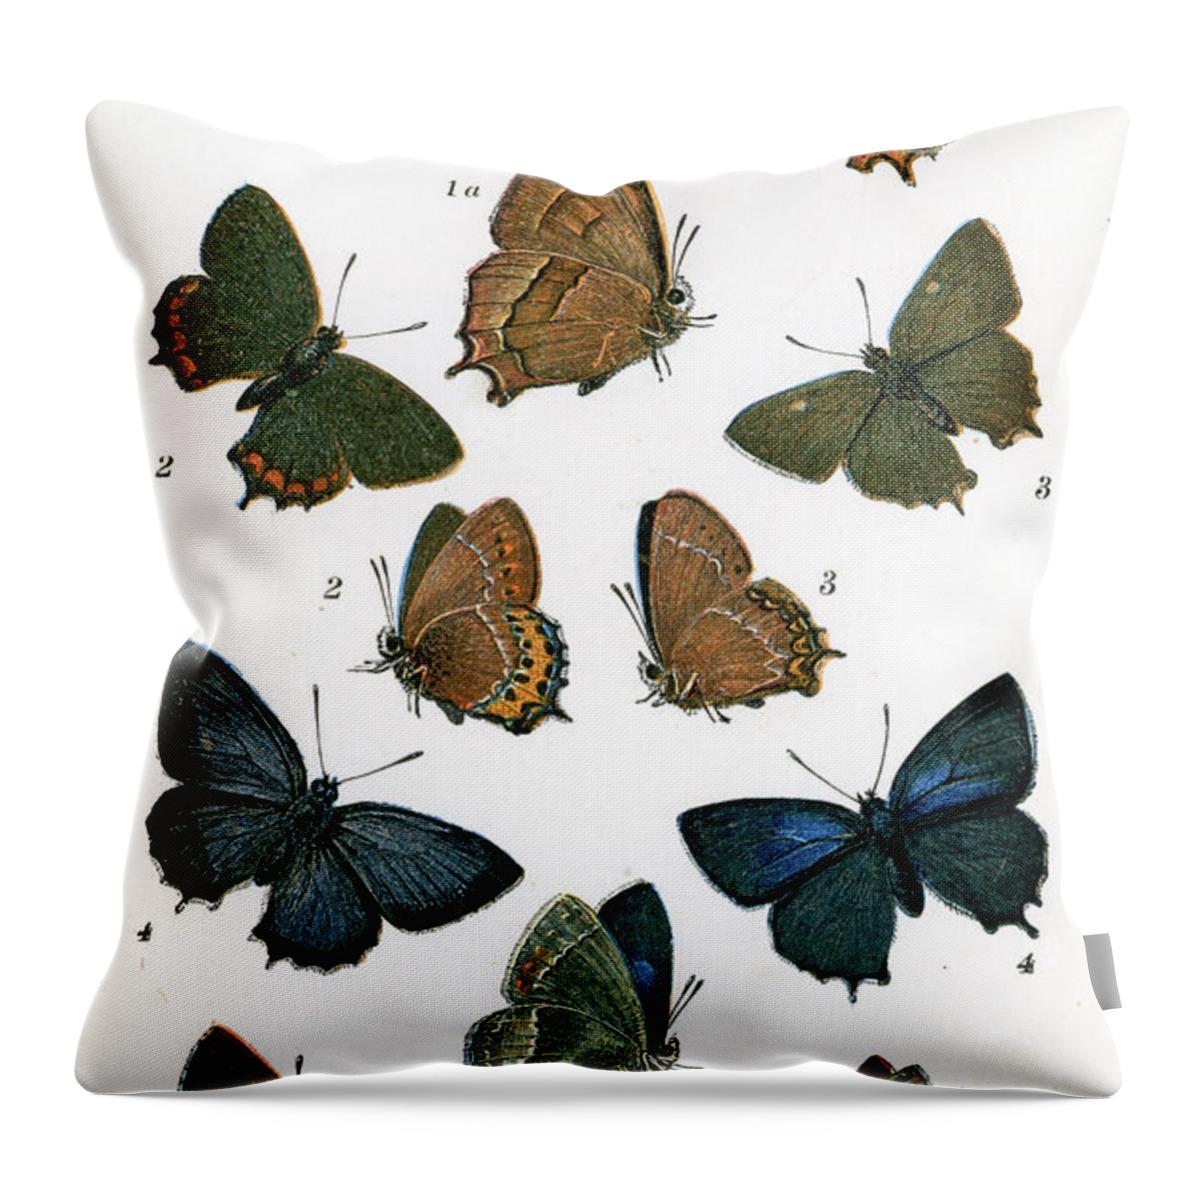 Hairstreak Butterfly Throw Pillow featuring the digital art Butterflies #1 by Duncan1890